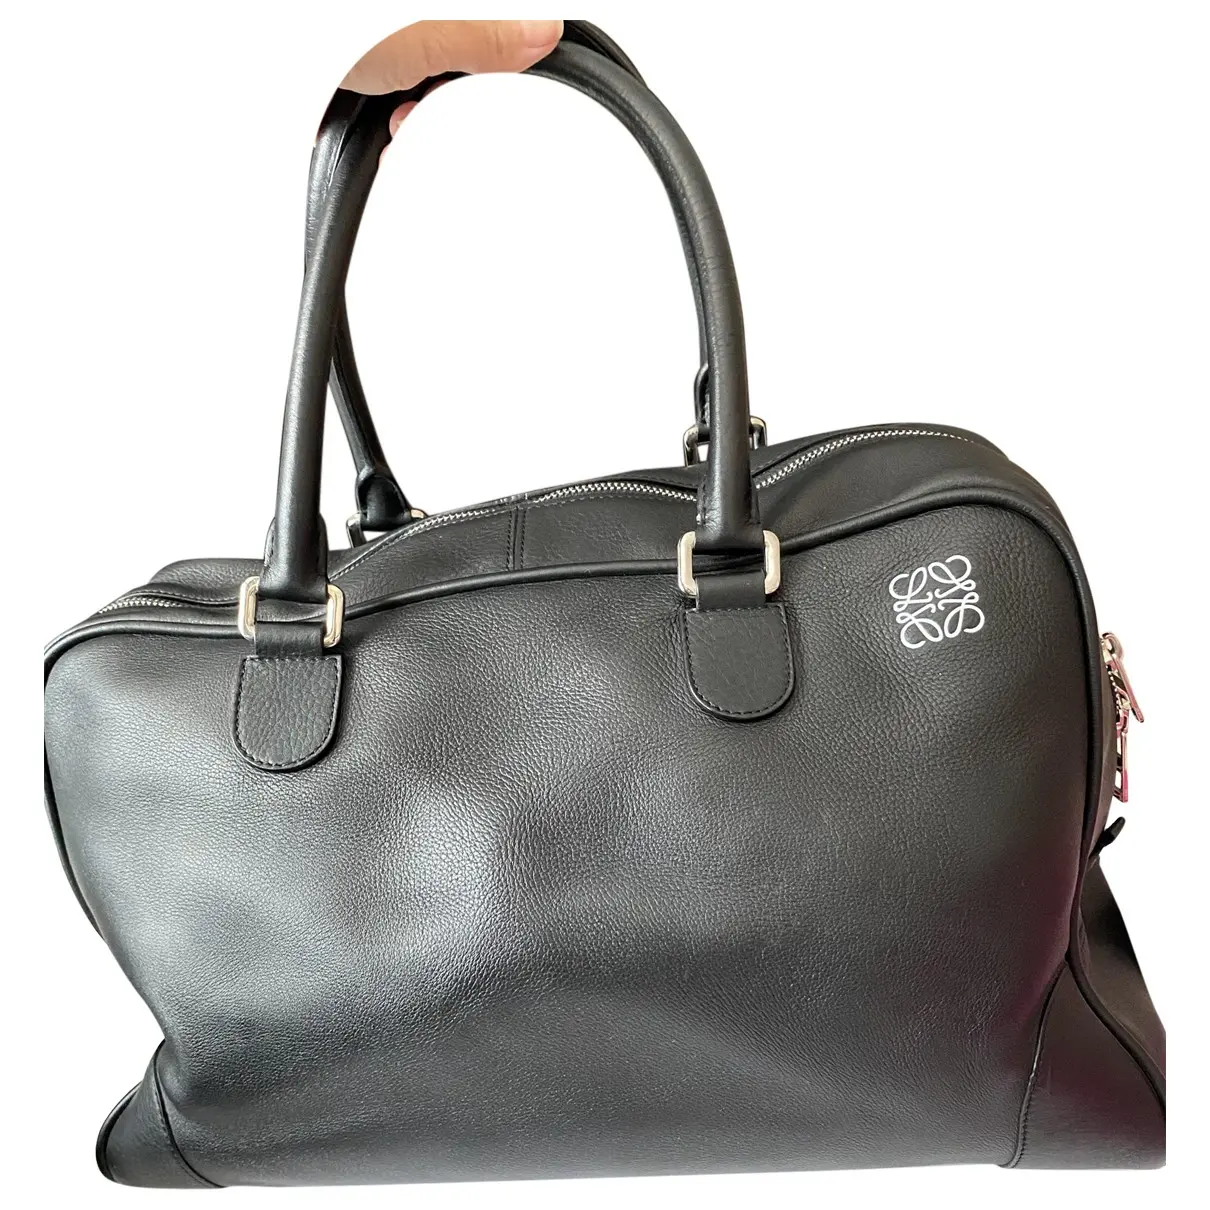 Amazona leather travel bag Loewe